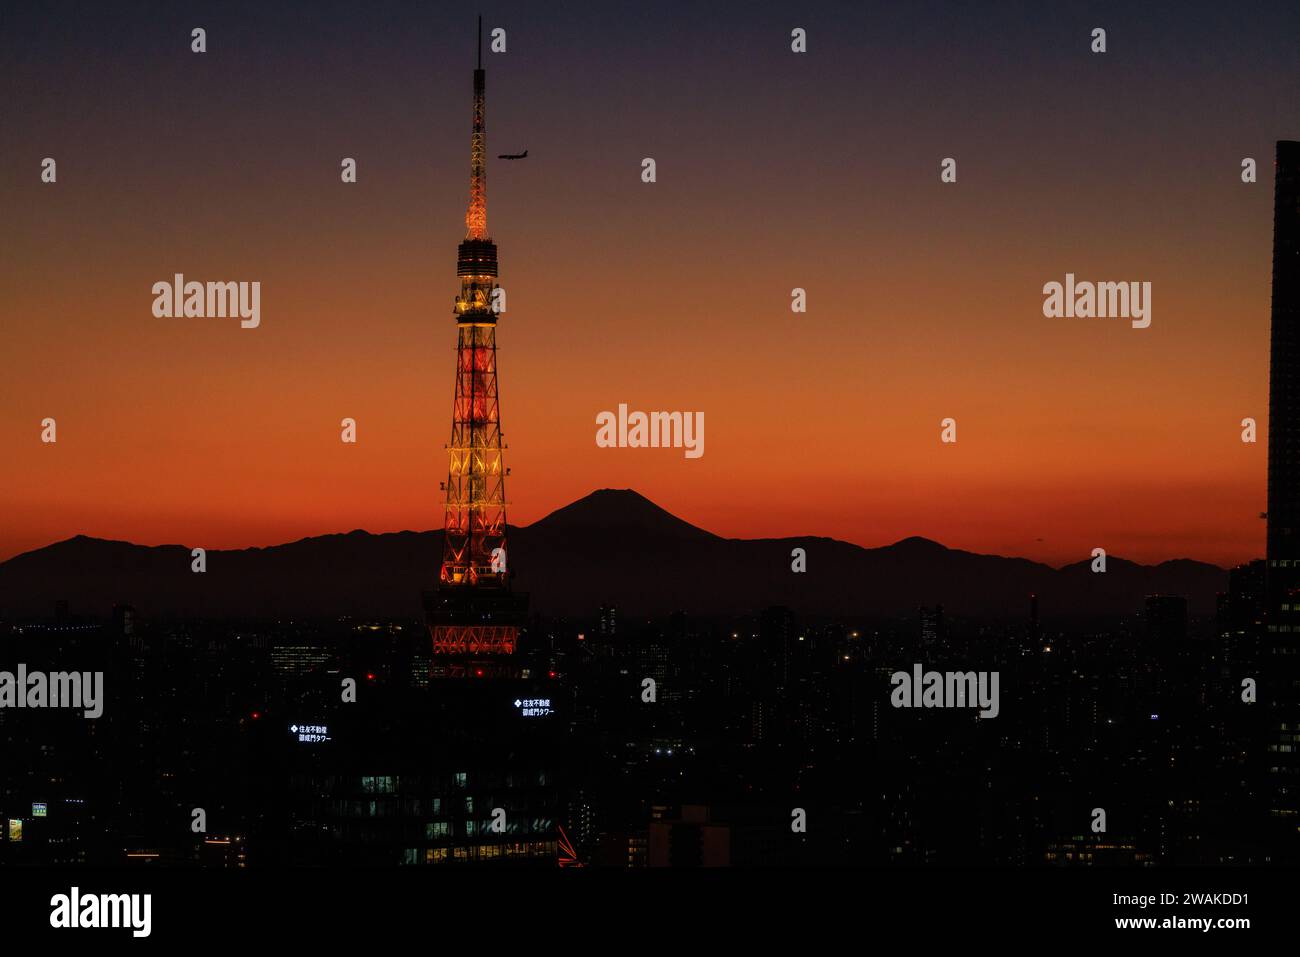 un aereo scende in un tramonto arancione mentre si avvicina alla torre di tokyo con la silhouette del monte fuji sullo sfondo Foto Stock